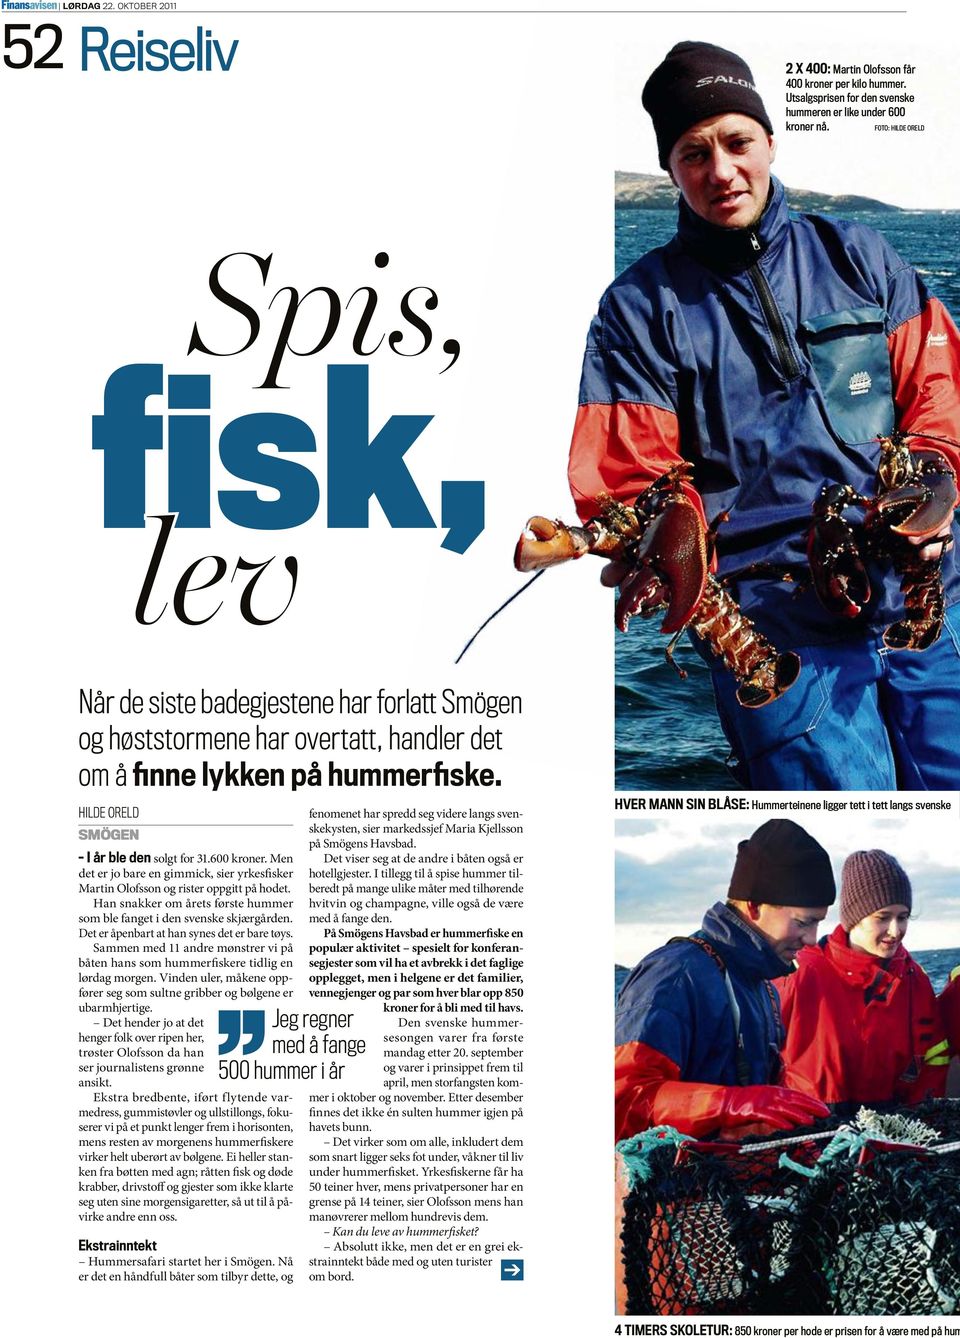 Men det er jo bare en gimmick, sier yrkesfisker Martin Olofsson og rister oppgitt på hodet. Han snakker om årets første hummer som ble fanget i den svenske skjærgården.